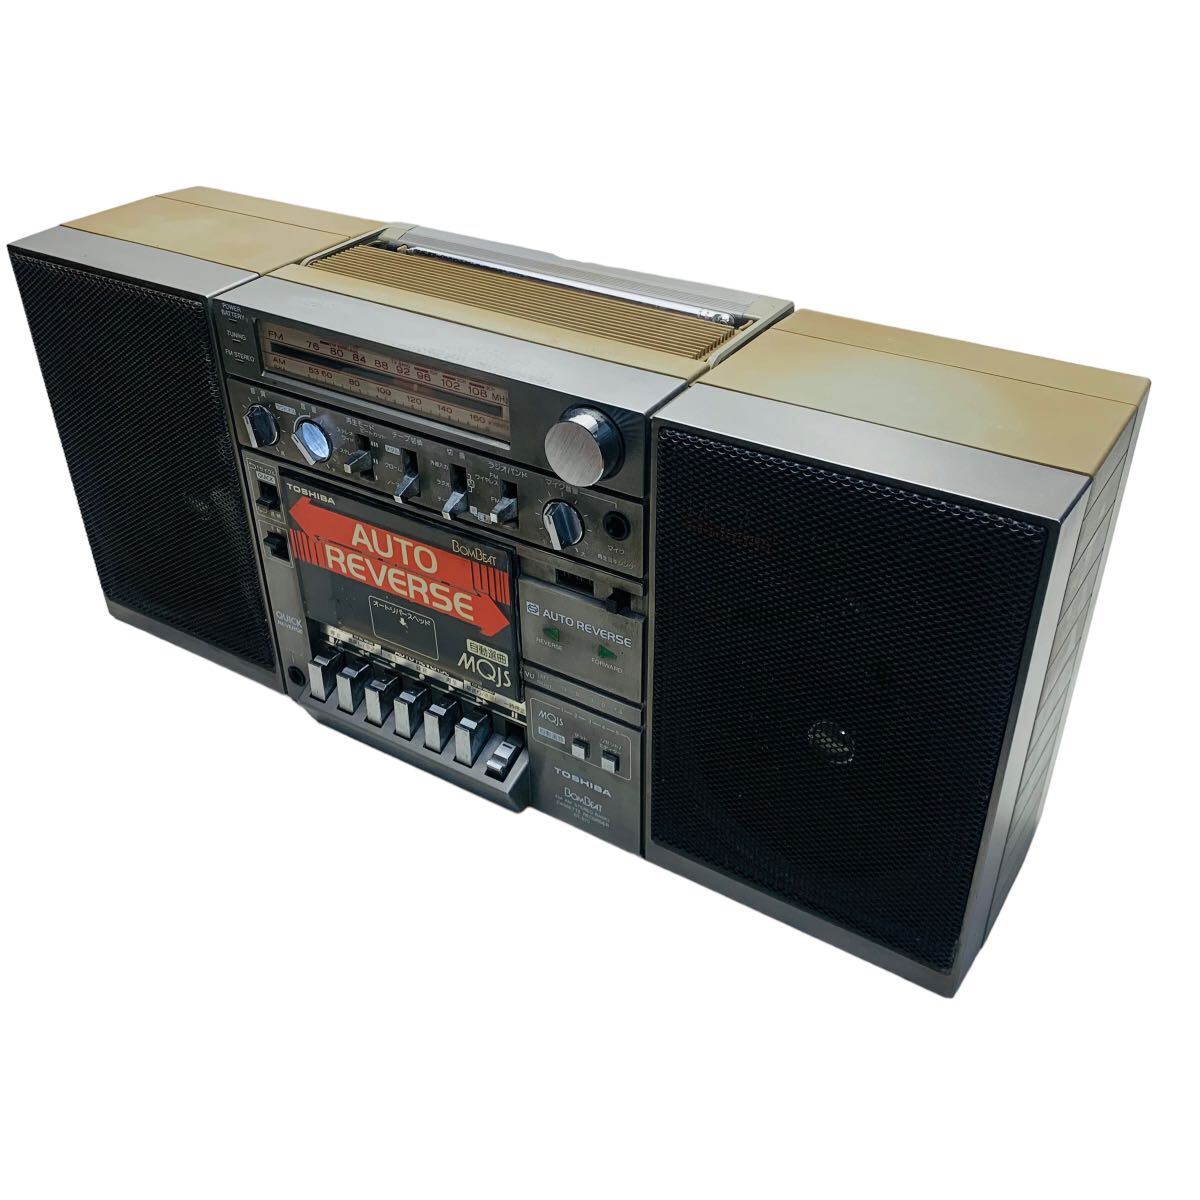 東芝ステレオラジオカセットレコーダーRT-S70_画像2